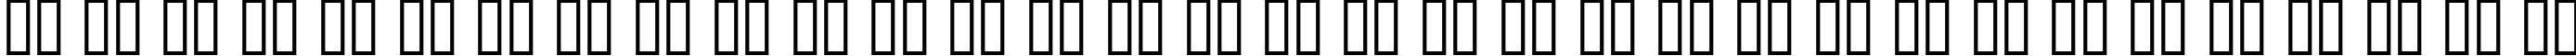 Пример написания русского алфавита шрифтом SKYfonttravel